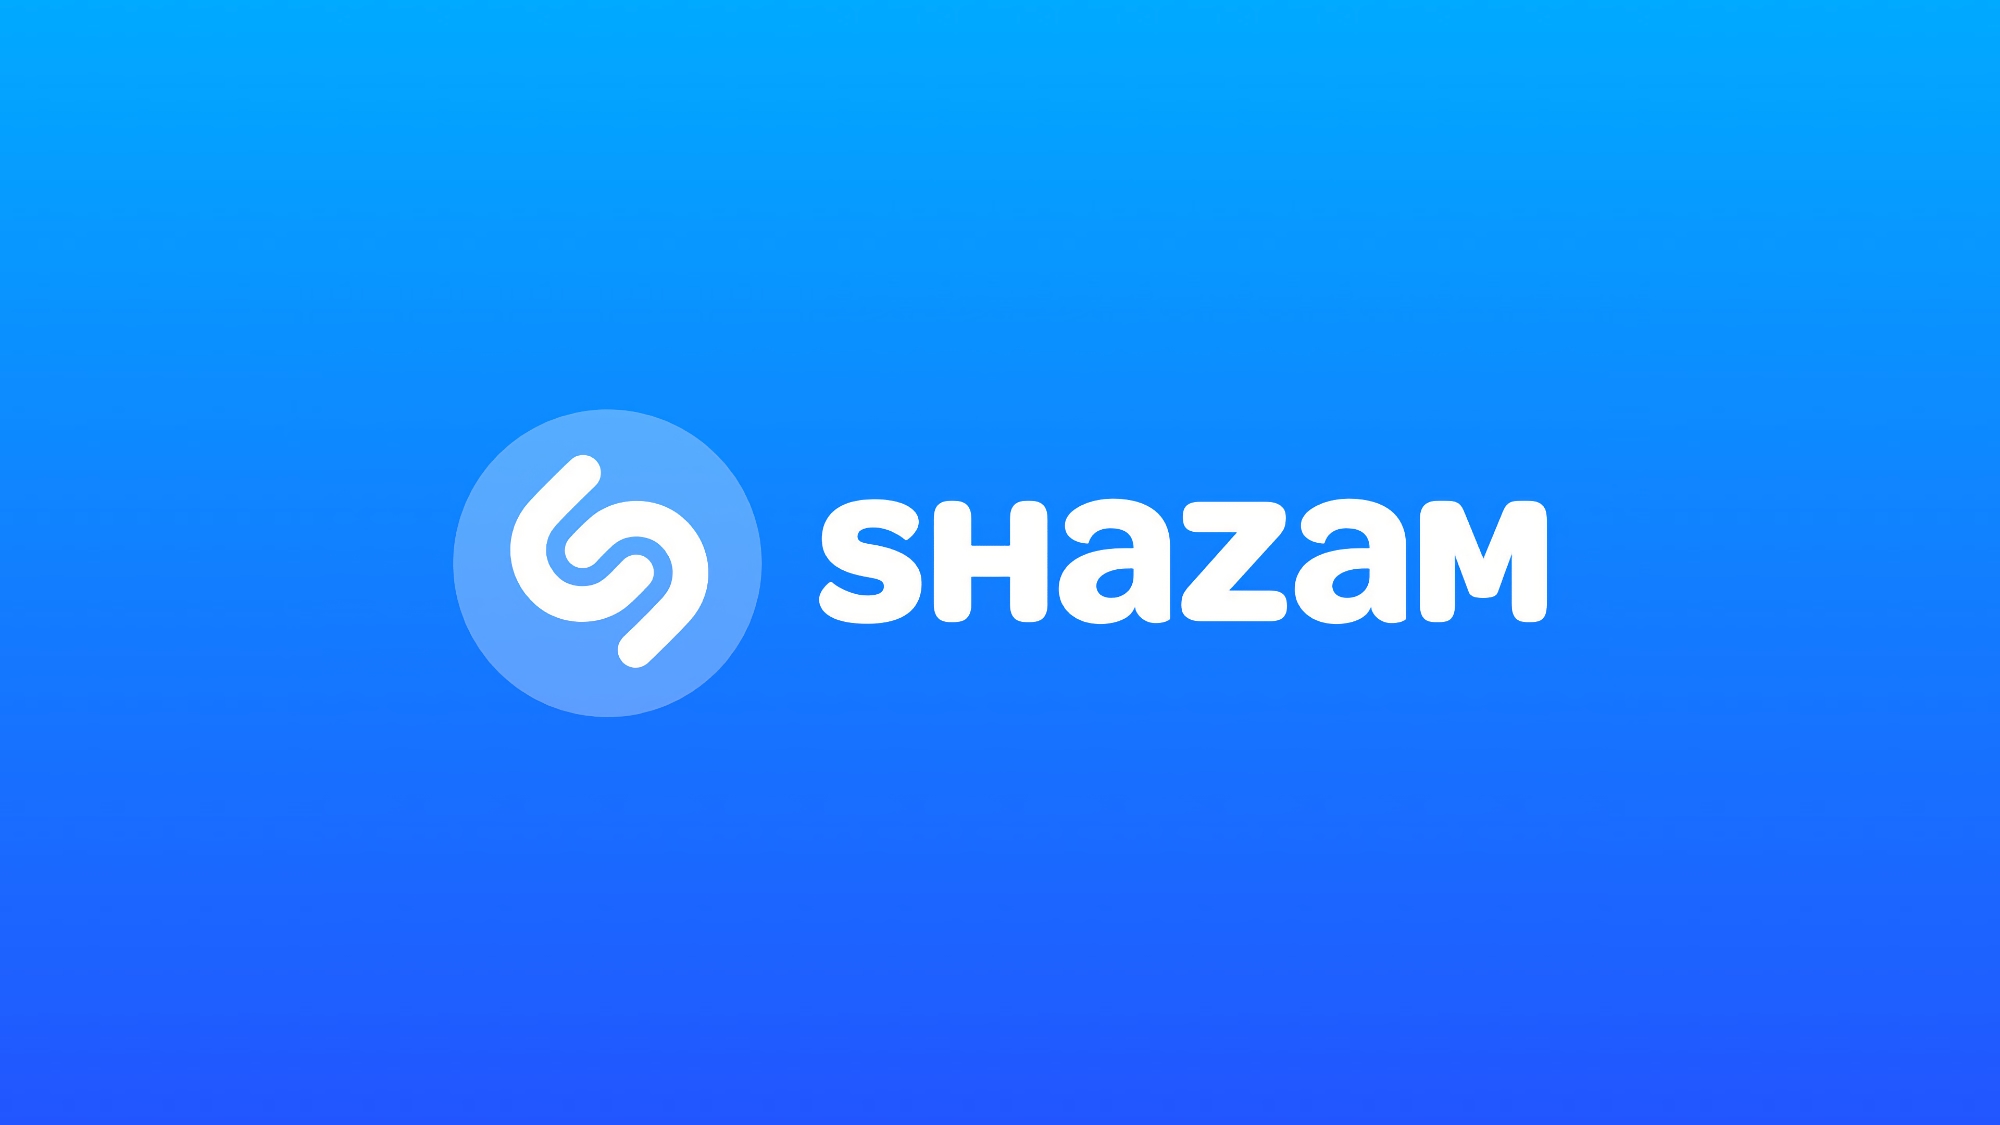 Apple udostępniło nową wersję Shazam: aplikacja synchronizuje się teraz z asystentem głosowym Siri